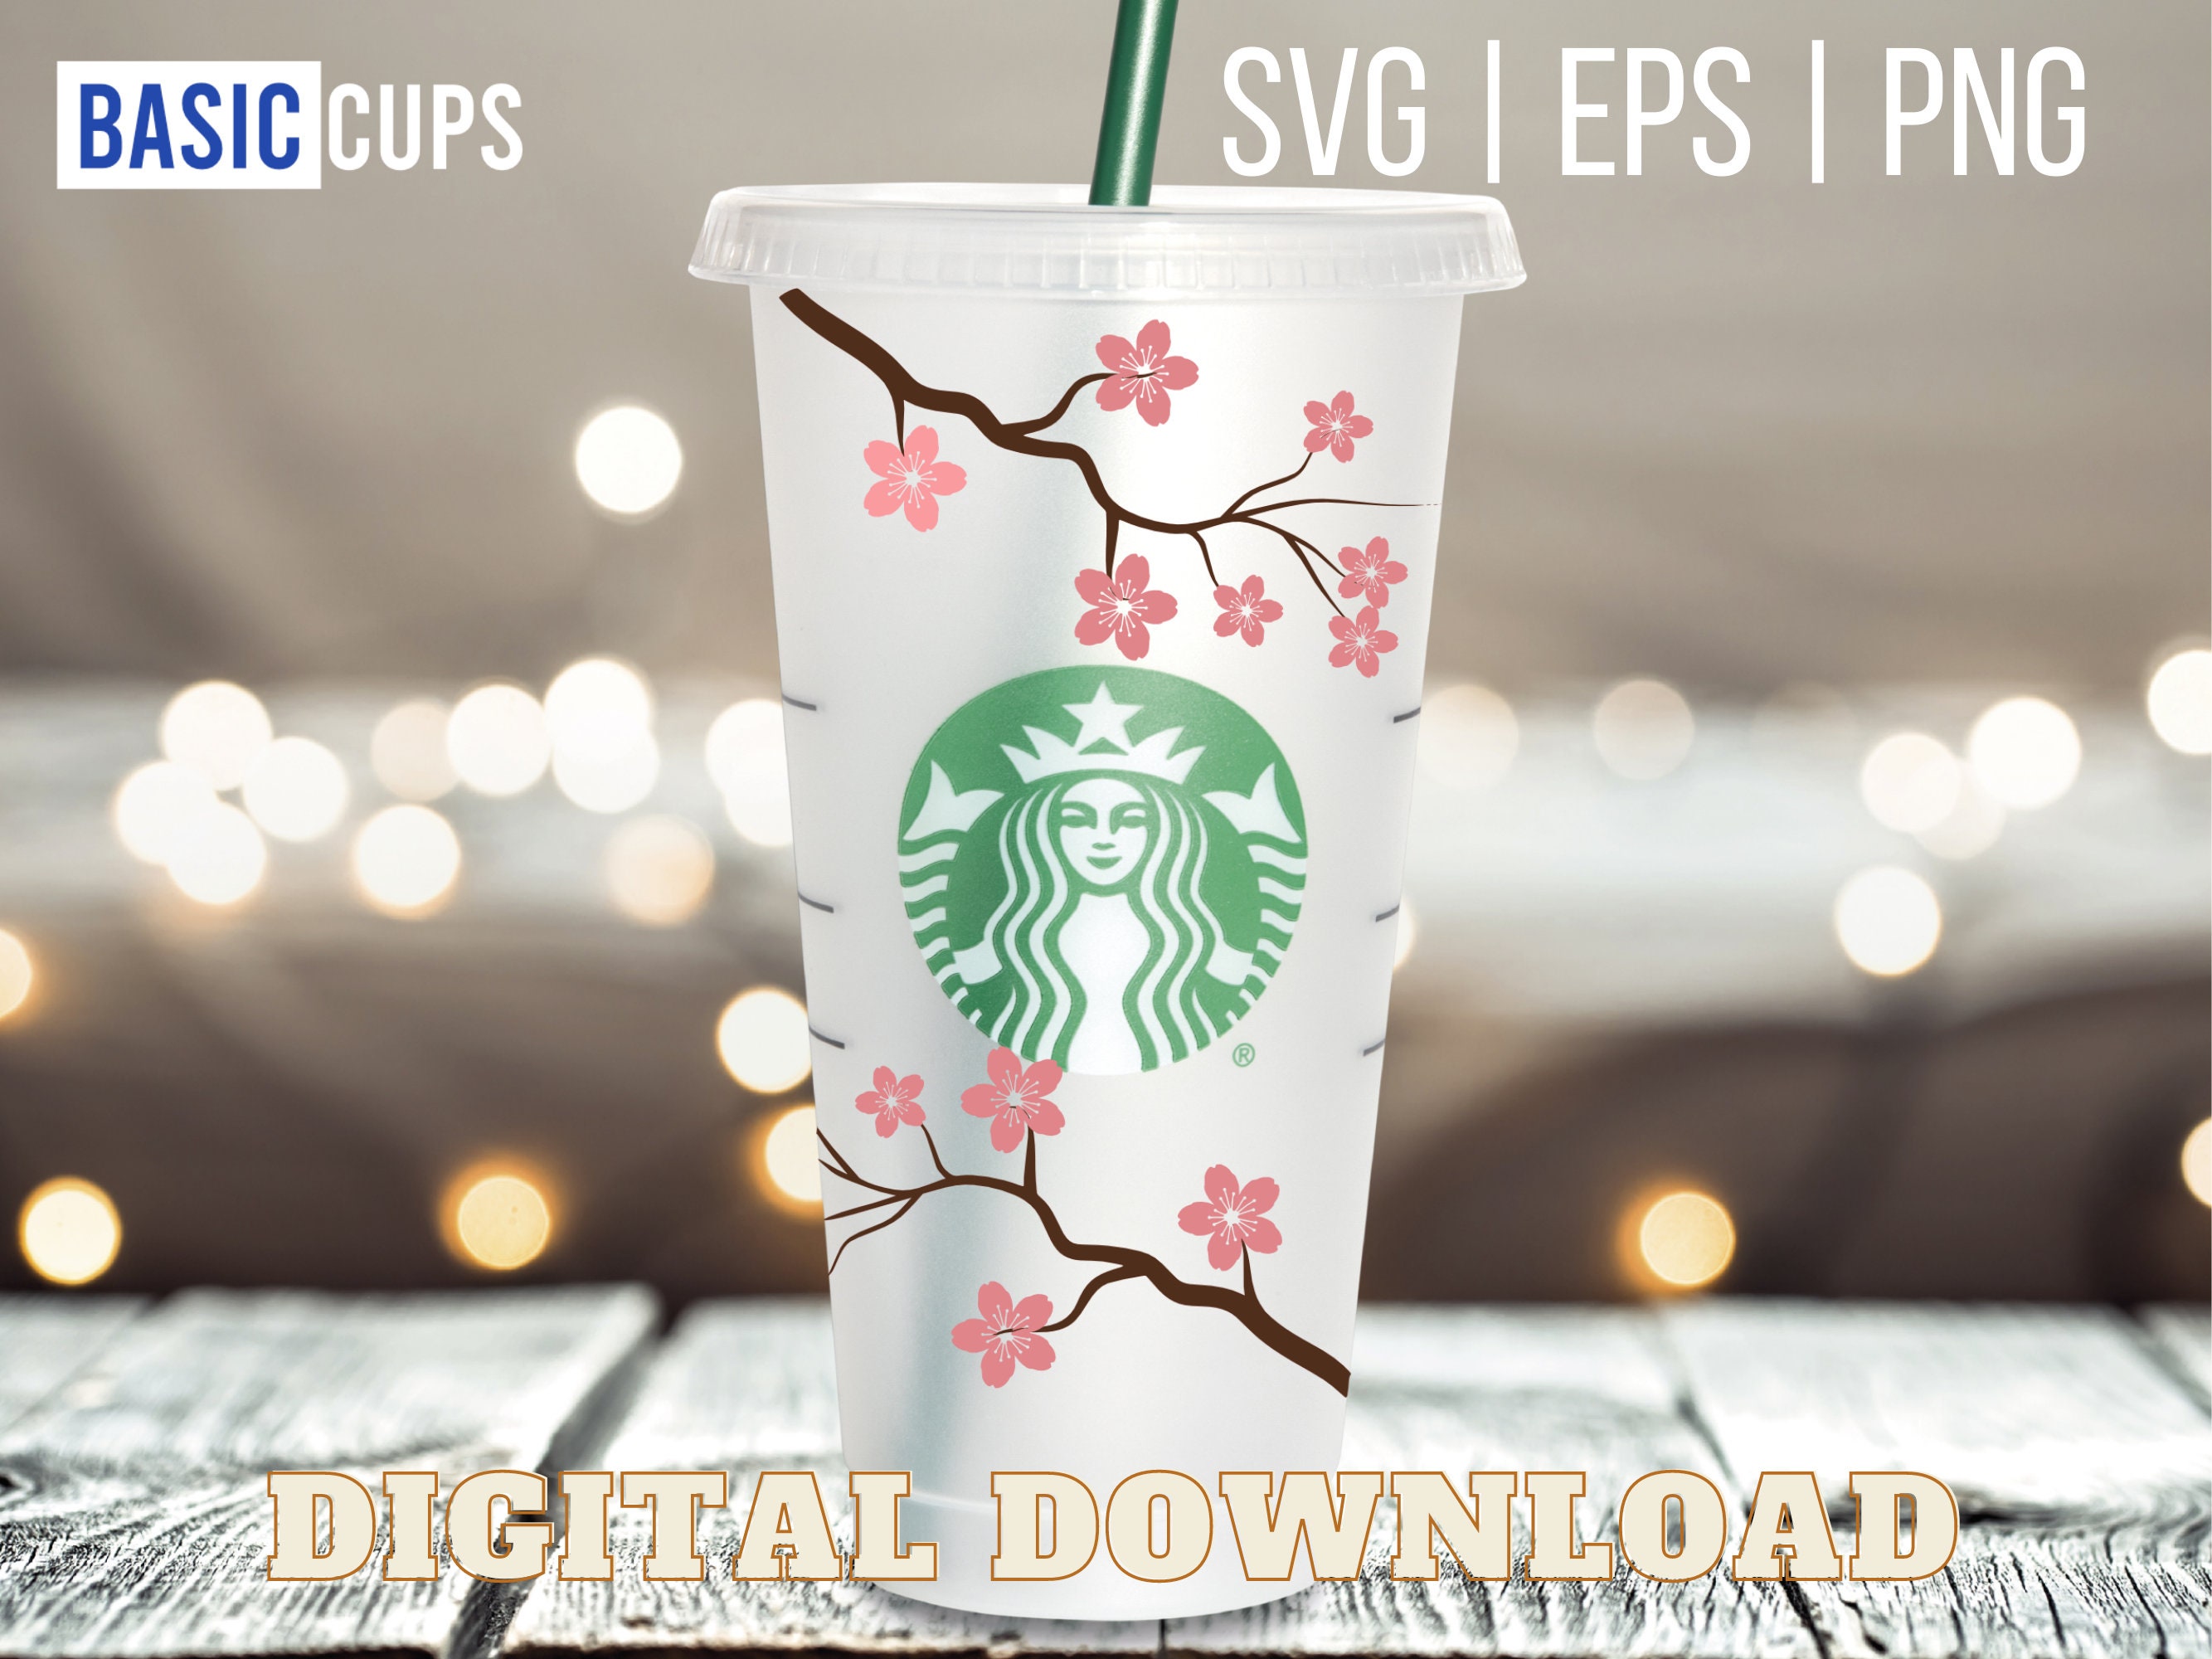 Starbucks Sakura Thermos Straw Tumbler with Strap – Ann Ann Starbucks